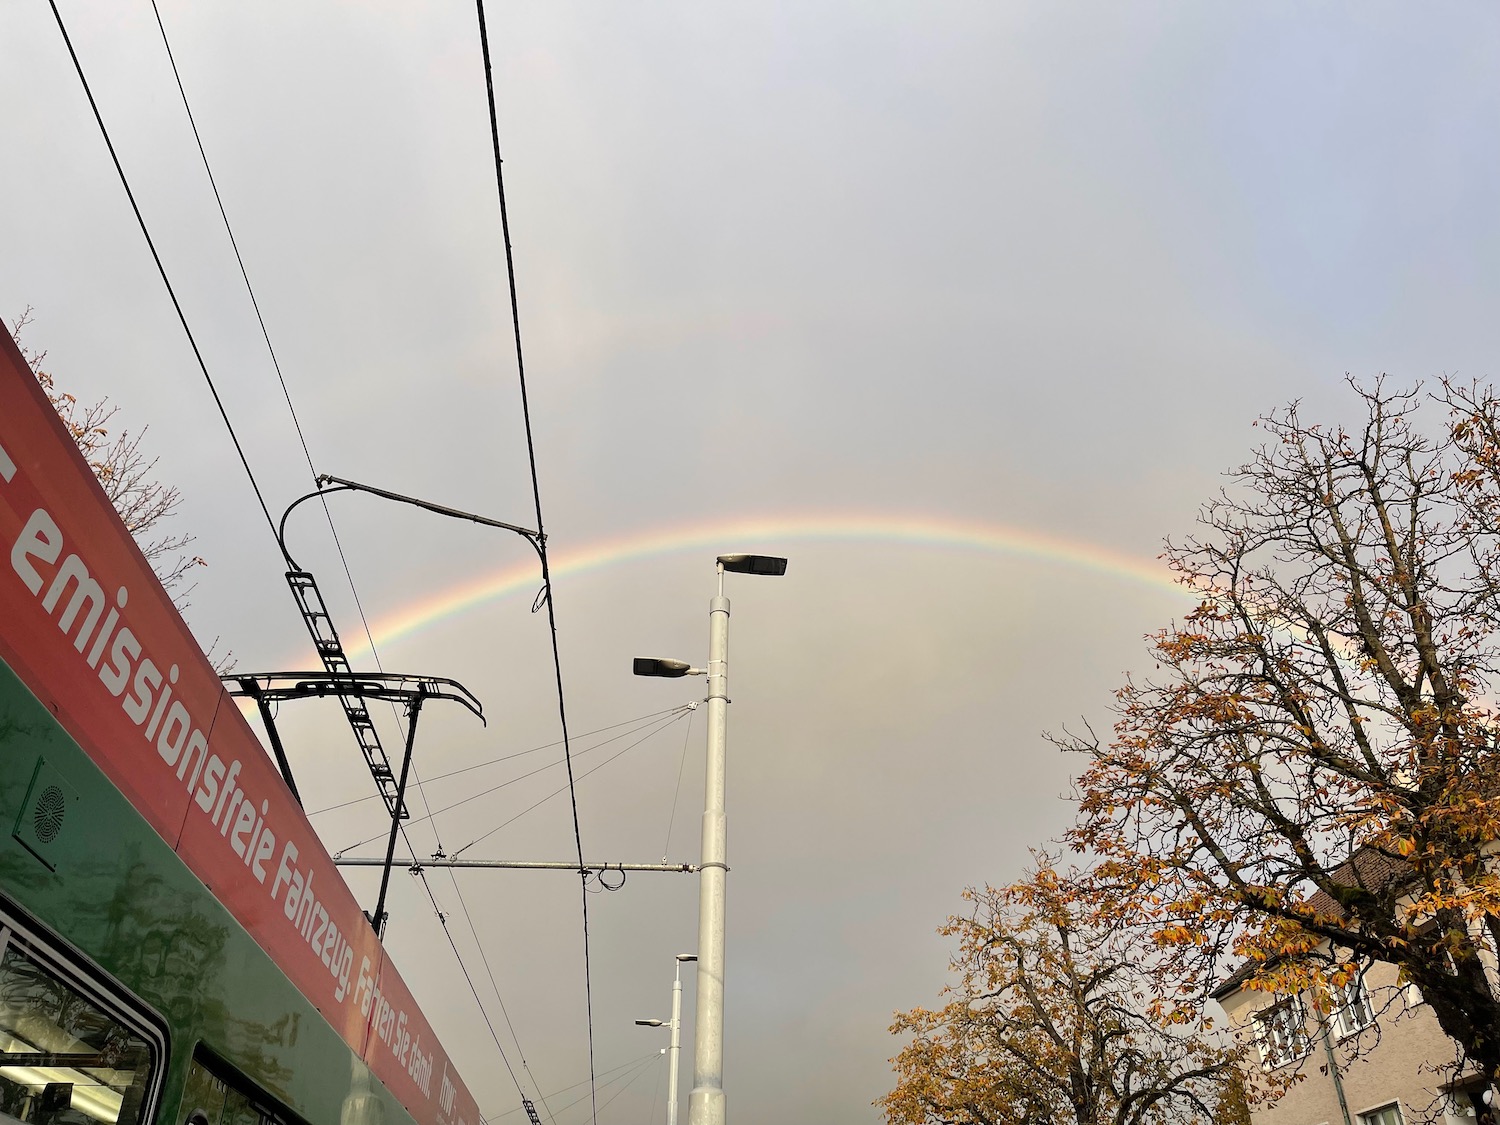 a rainbow over a street light